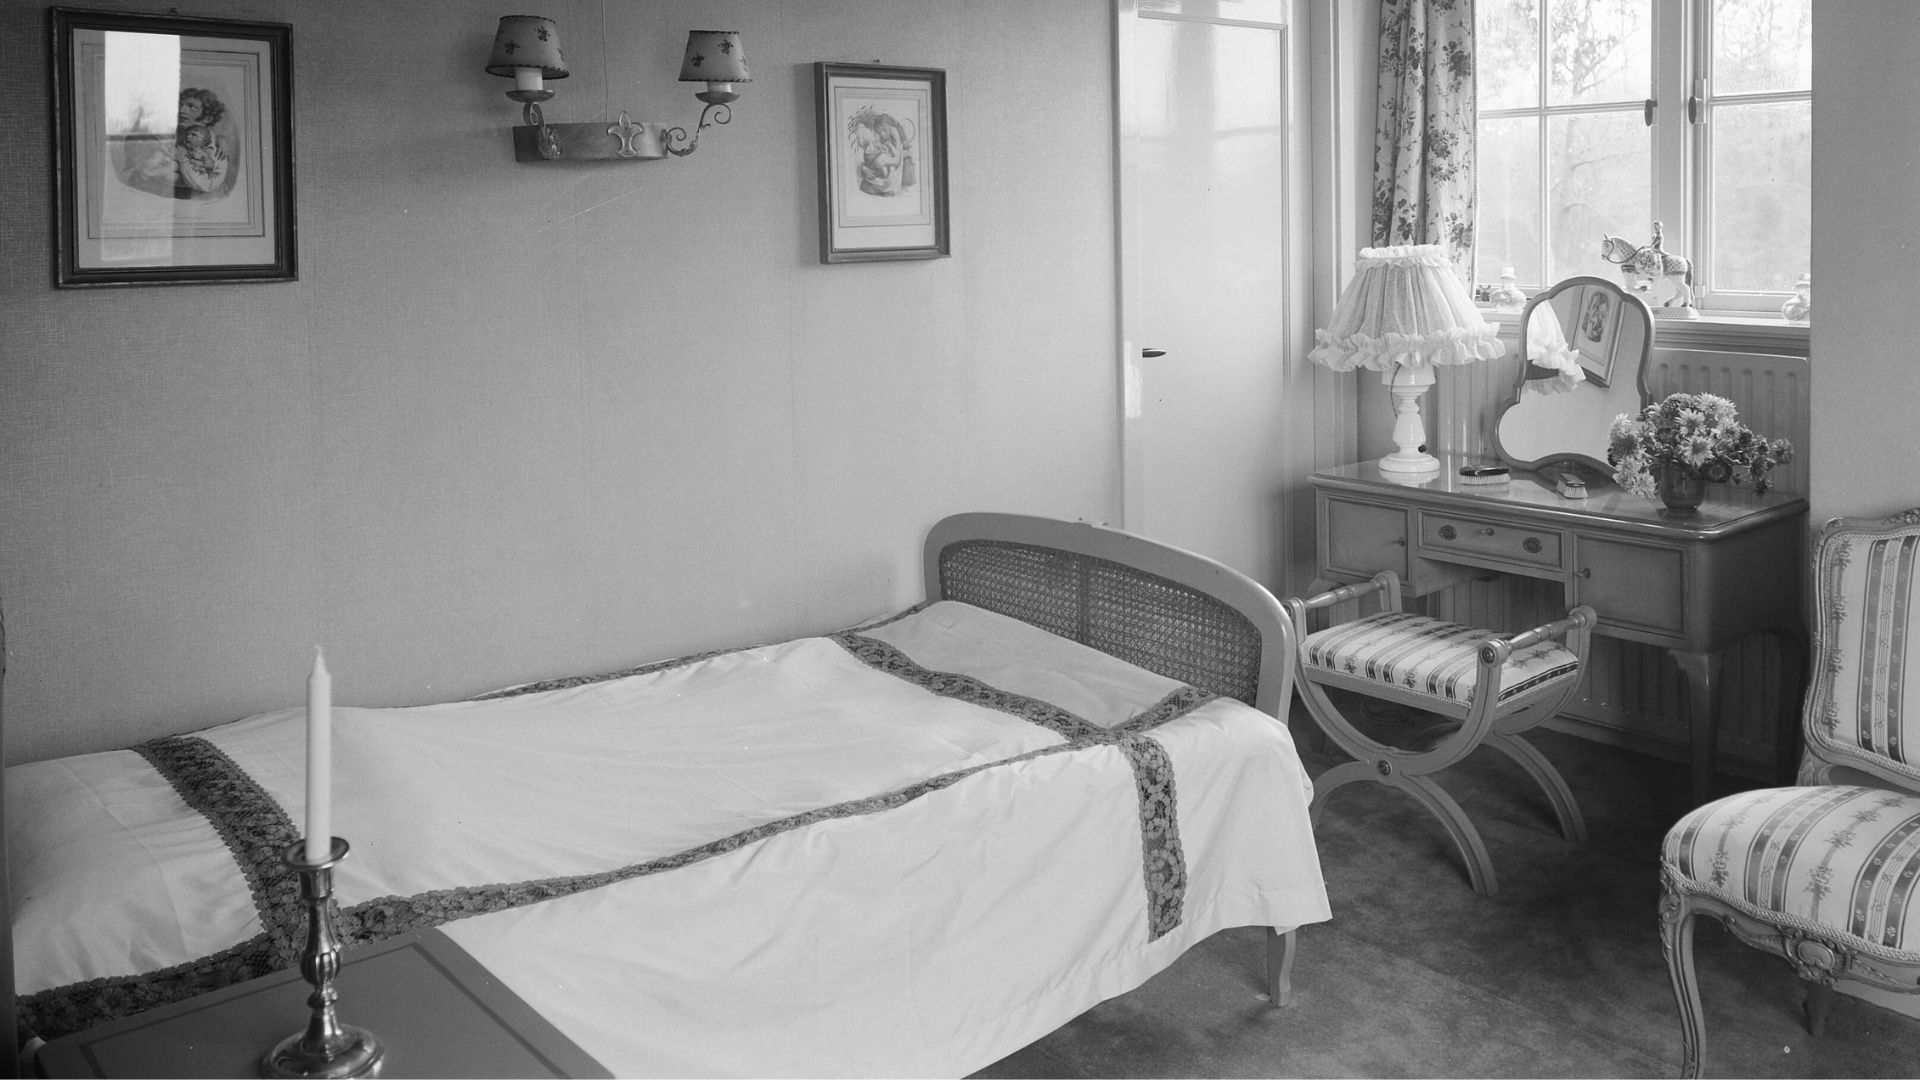 Herinneringen aan mijn slaapkamertje uit 1953. Uitgelichte afbeelding